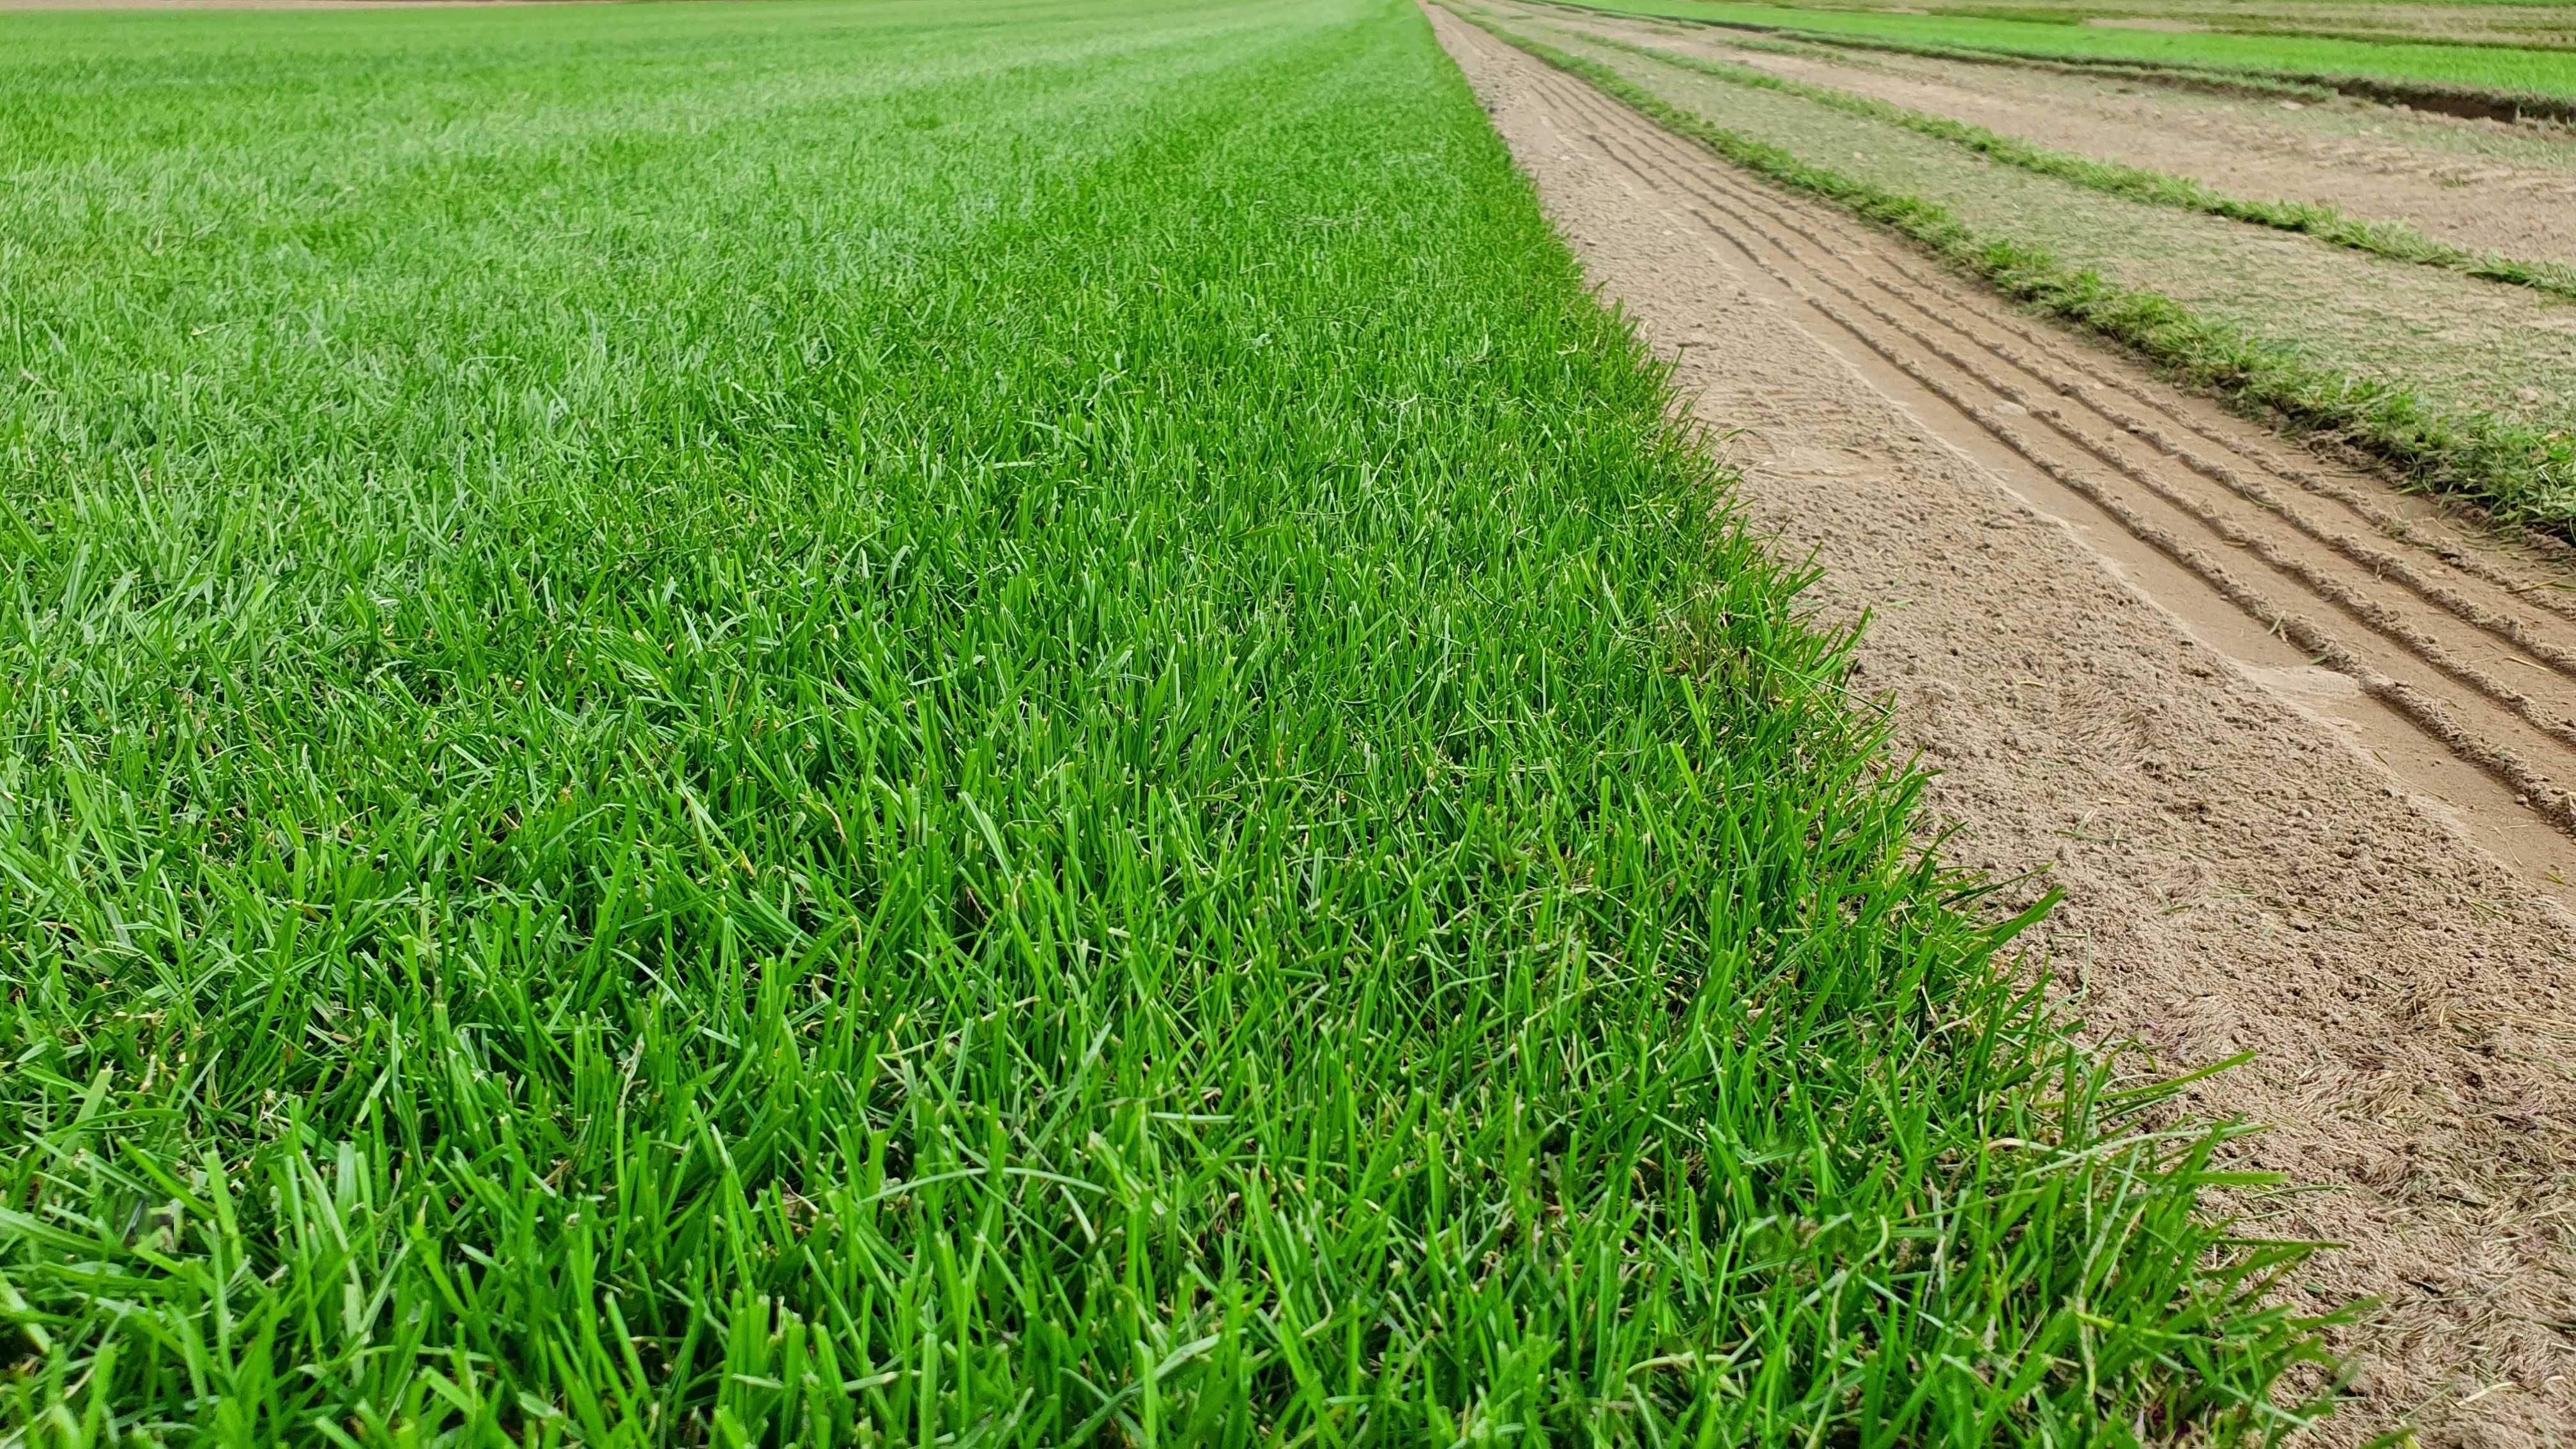 Trawniki z rolki Green Grass/ Trawa plantacja/Producent